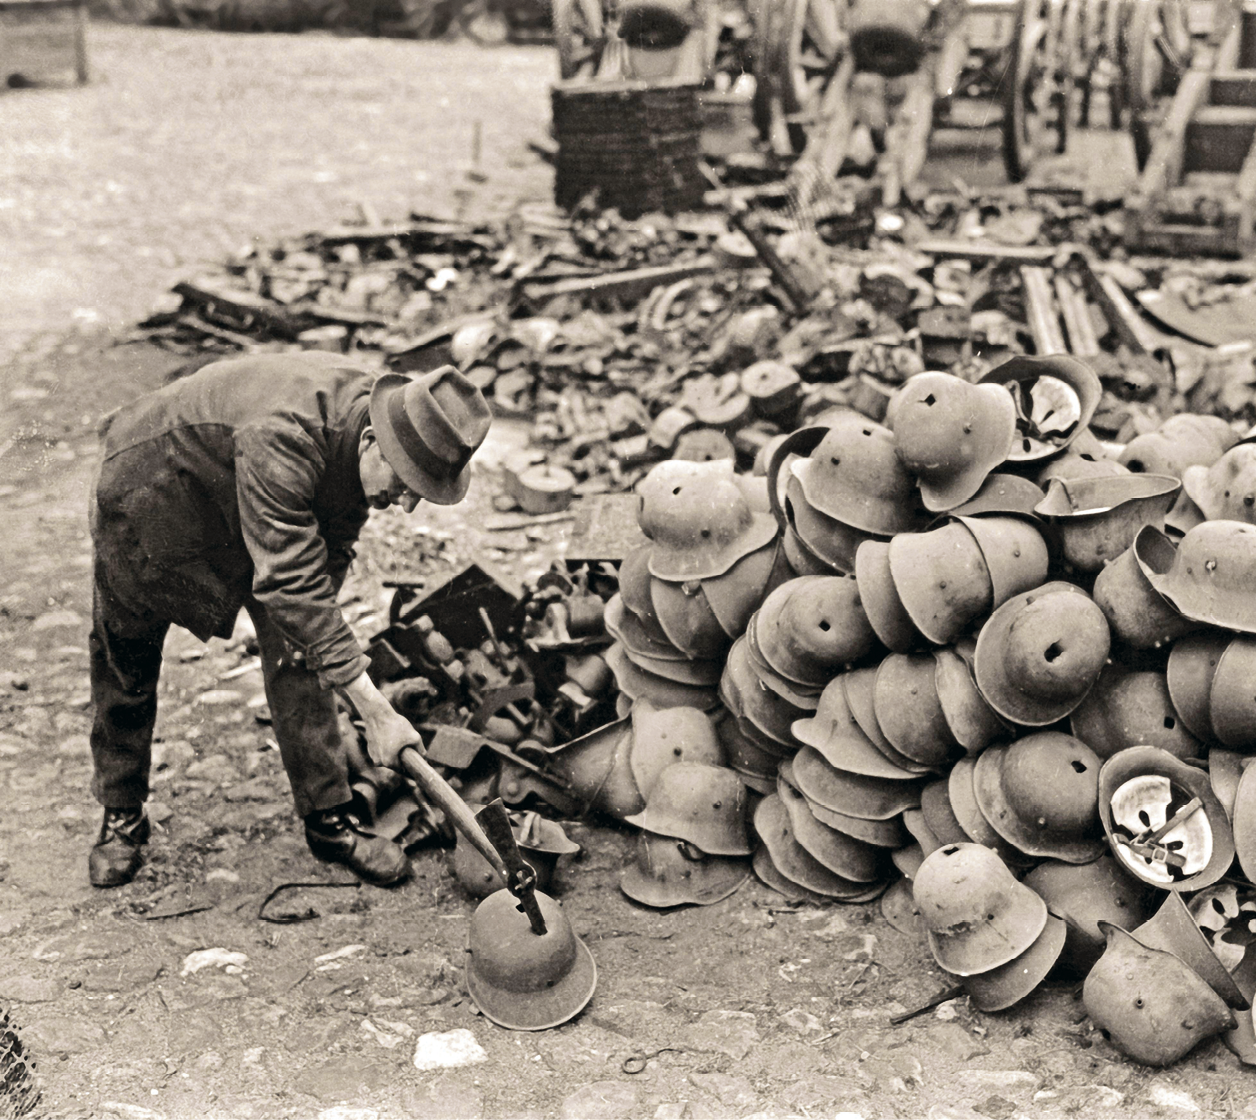 Fotografia em preto e branco. Homem de terno e chapéu martelando capacetes. Alguns com um furo no centro estão empilhados à direita. Ao fundo, outros materiais aglomerados.